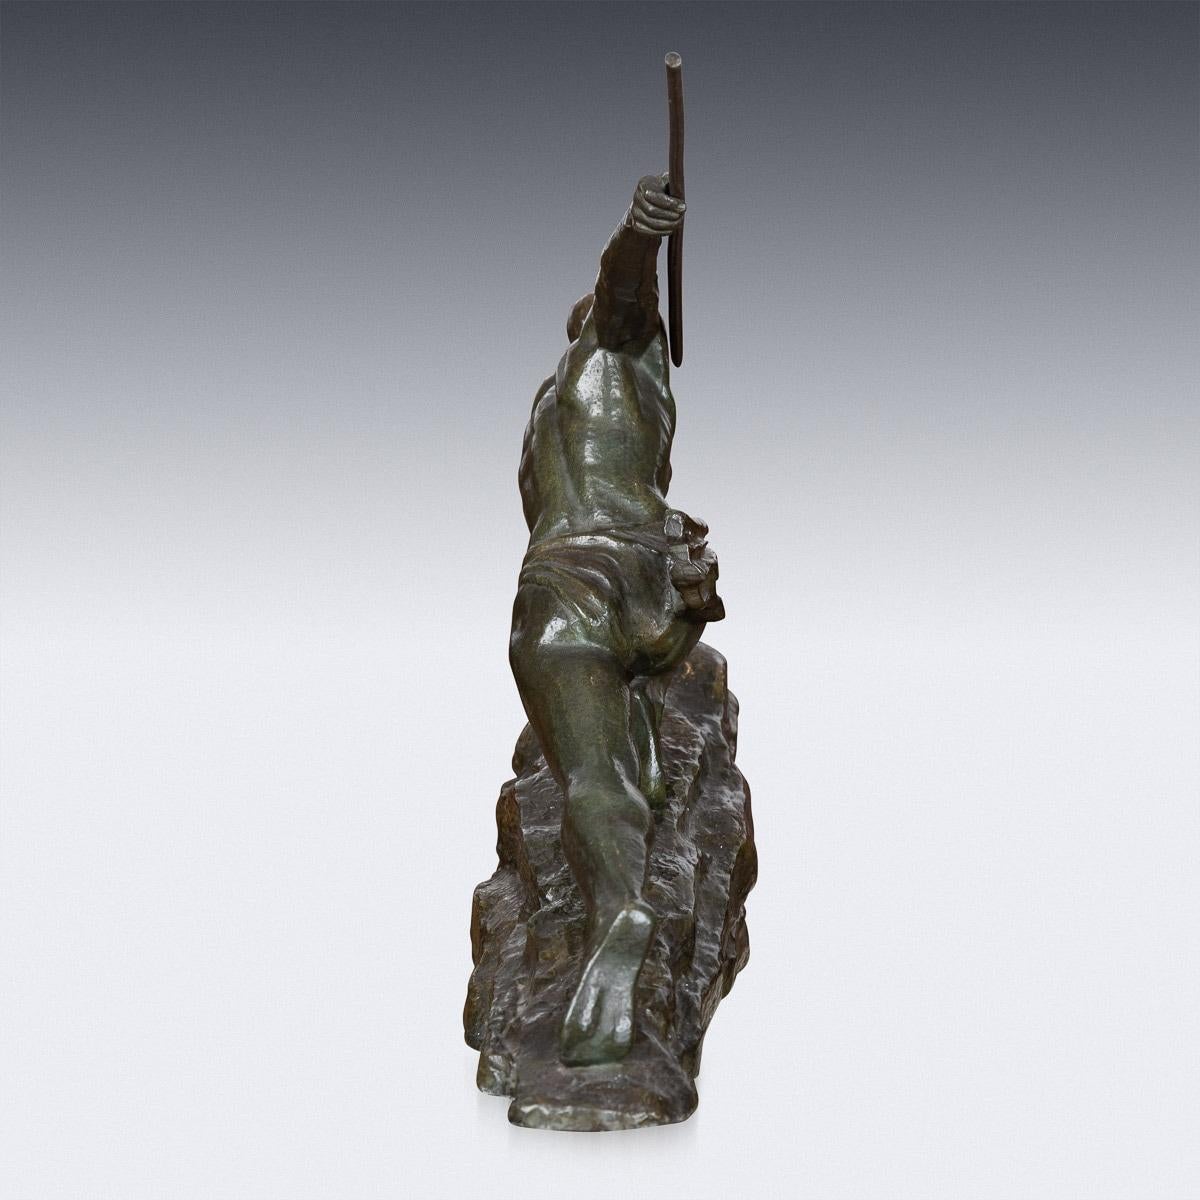 französische Art-déco-Bronze des 20. Jahrhunderts von Pierre Le Faguay (1892-1962), modelliert als Jäger mit Speer auf einer Felsenscherbe (Der Steinjäger).

ZUSTAND
In großartigem Zustand - keine Schäden.

GRÖSSE
Höhe: 38 cm
Breite: 55cm